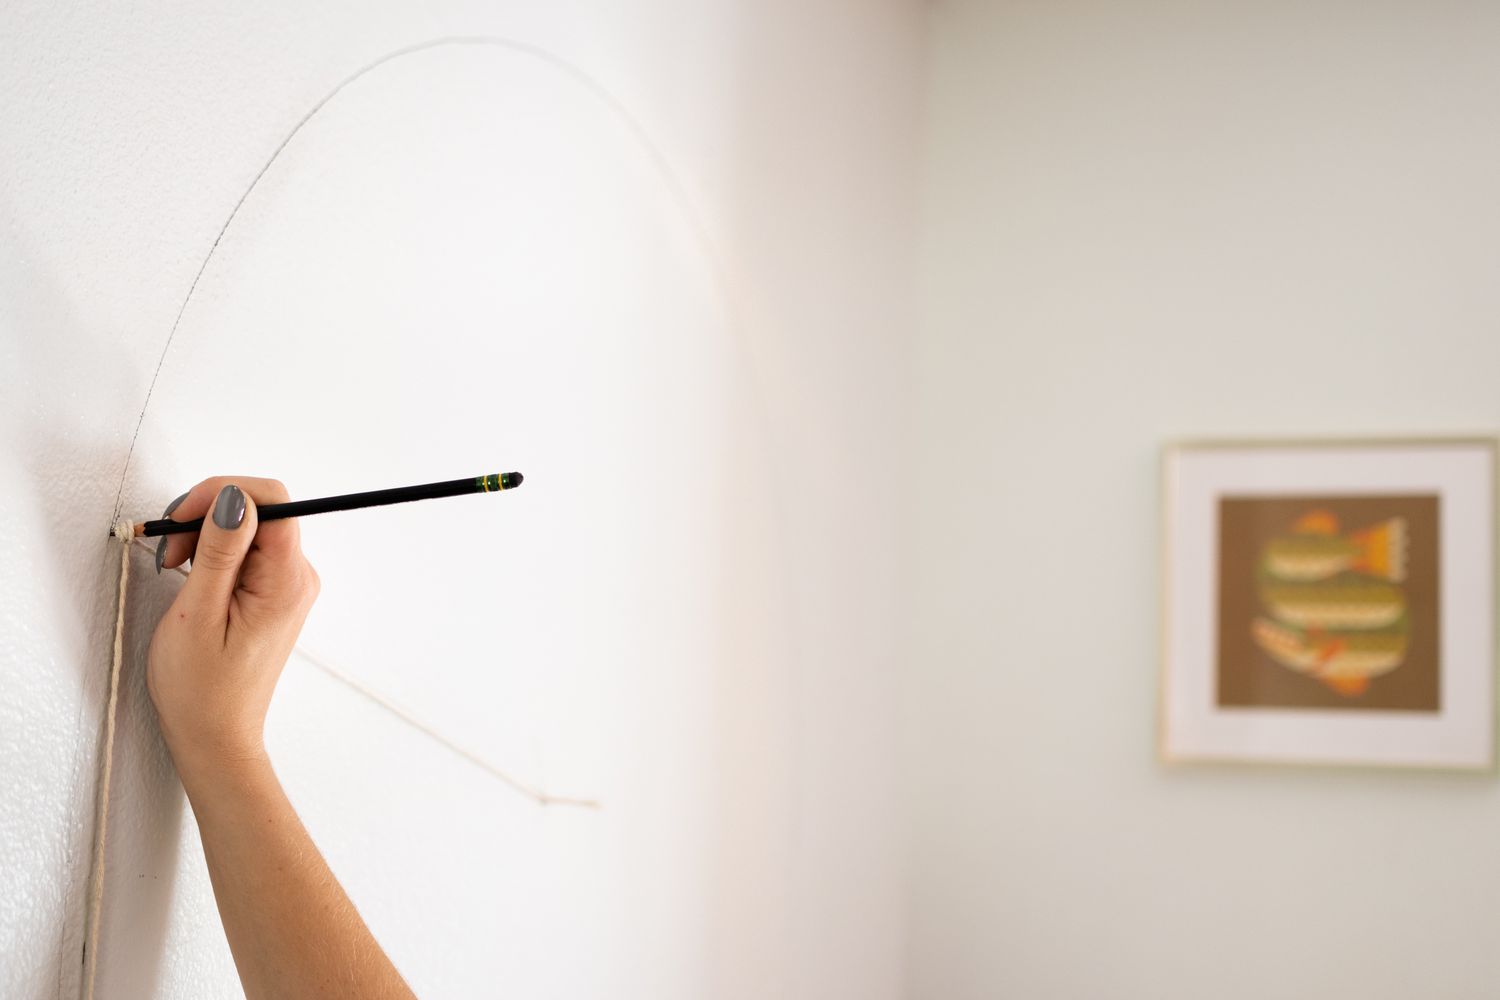 Forma de arco trazada en la pared con lápiz y cuerda para medir